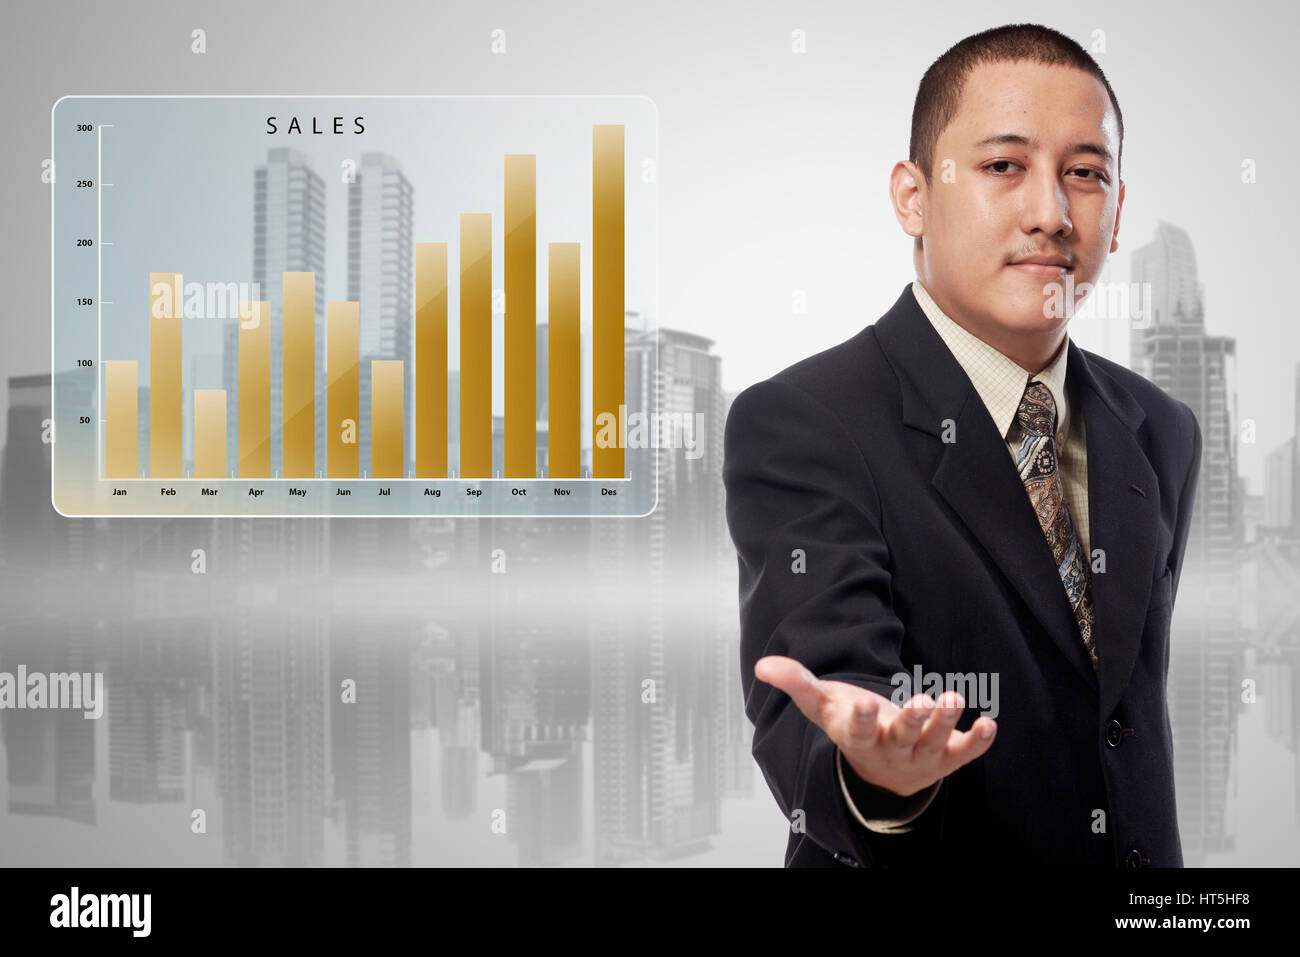 Asiatische Geschäftsmann mit dem Diagramm Vertrieb anbieten, um die Hand schütteln im Stadtbild Hintergrund Stockfoto